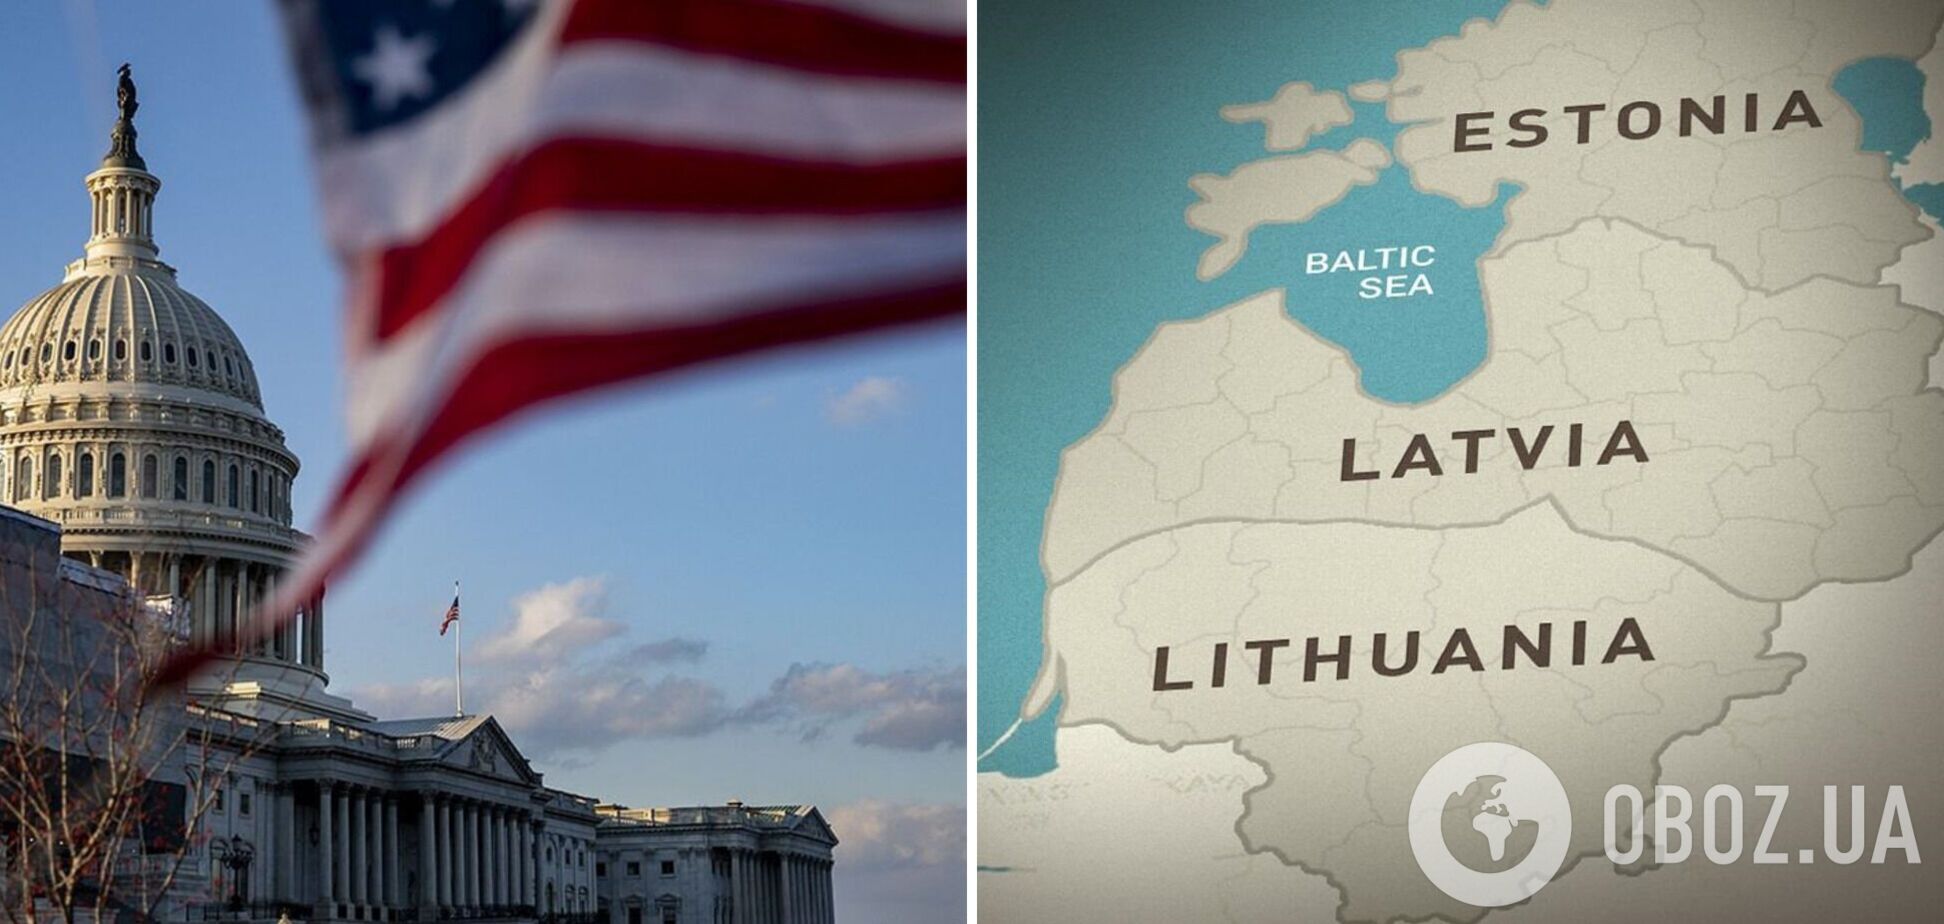 Конгресс США одобрил предоставление военной помощи странам Балтии: о какой сумме идет речь